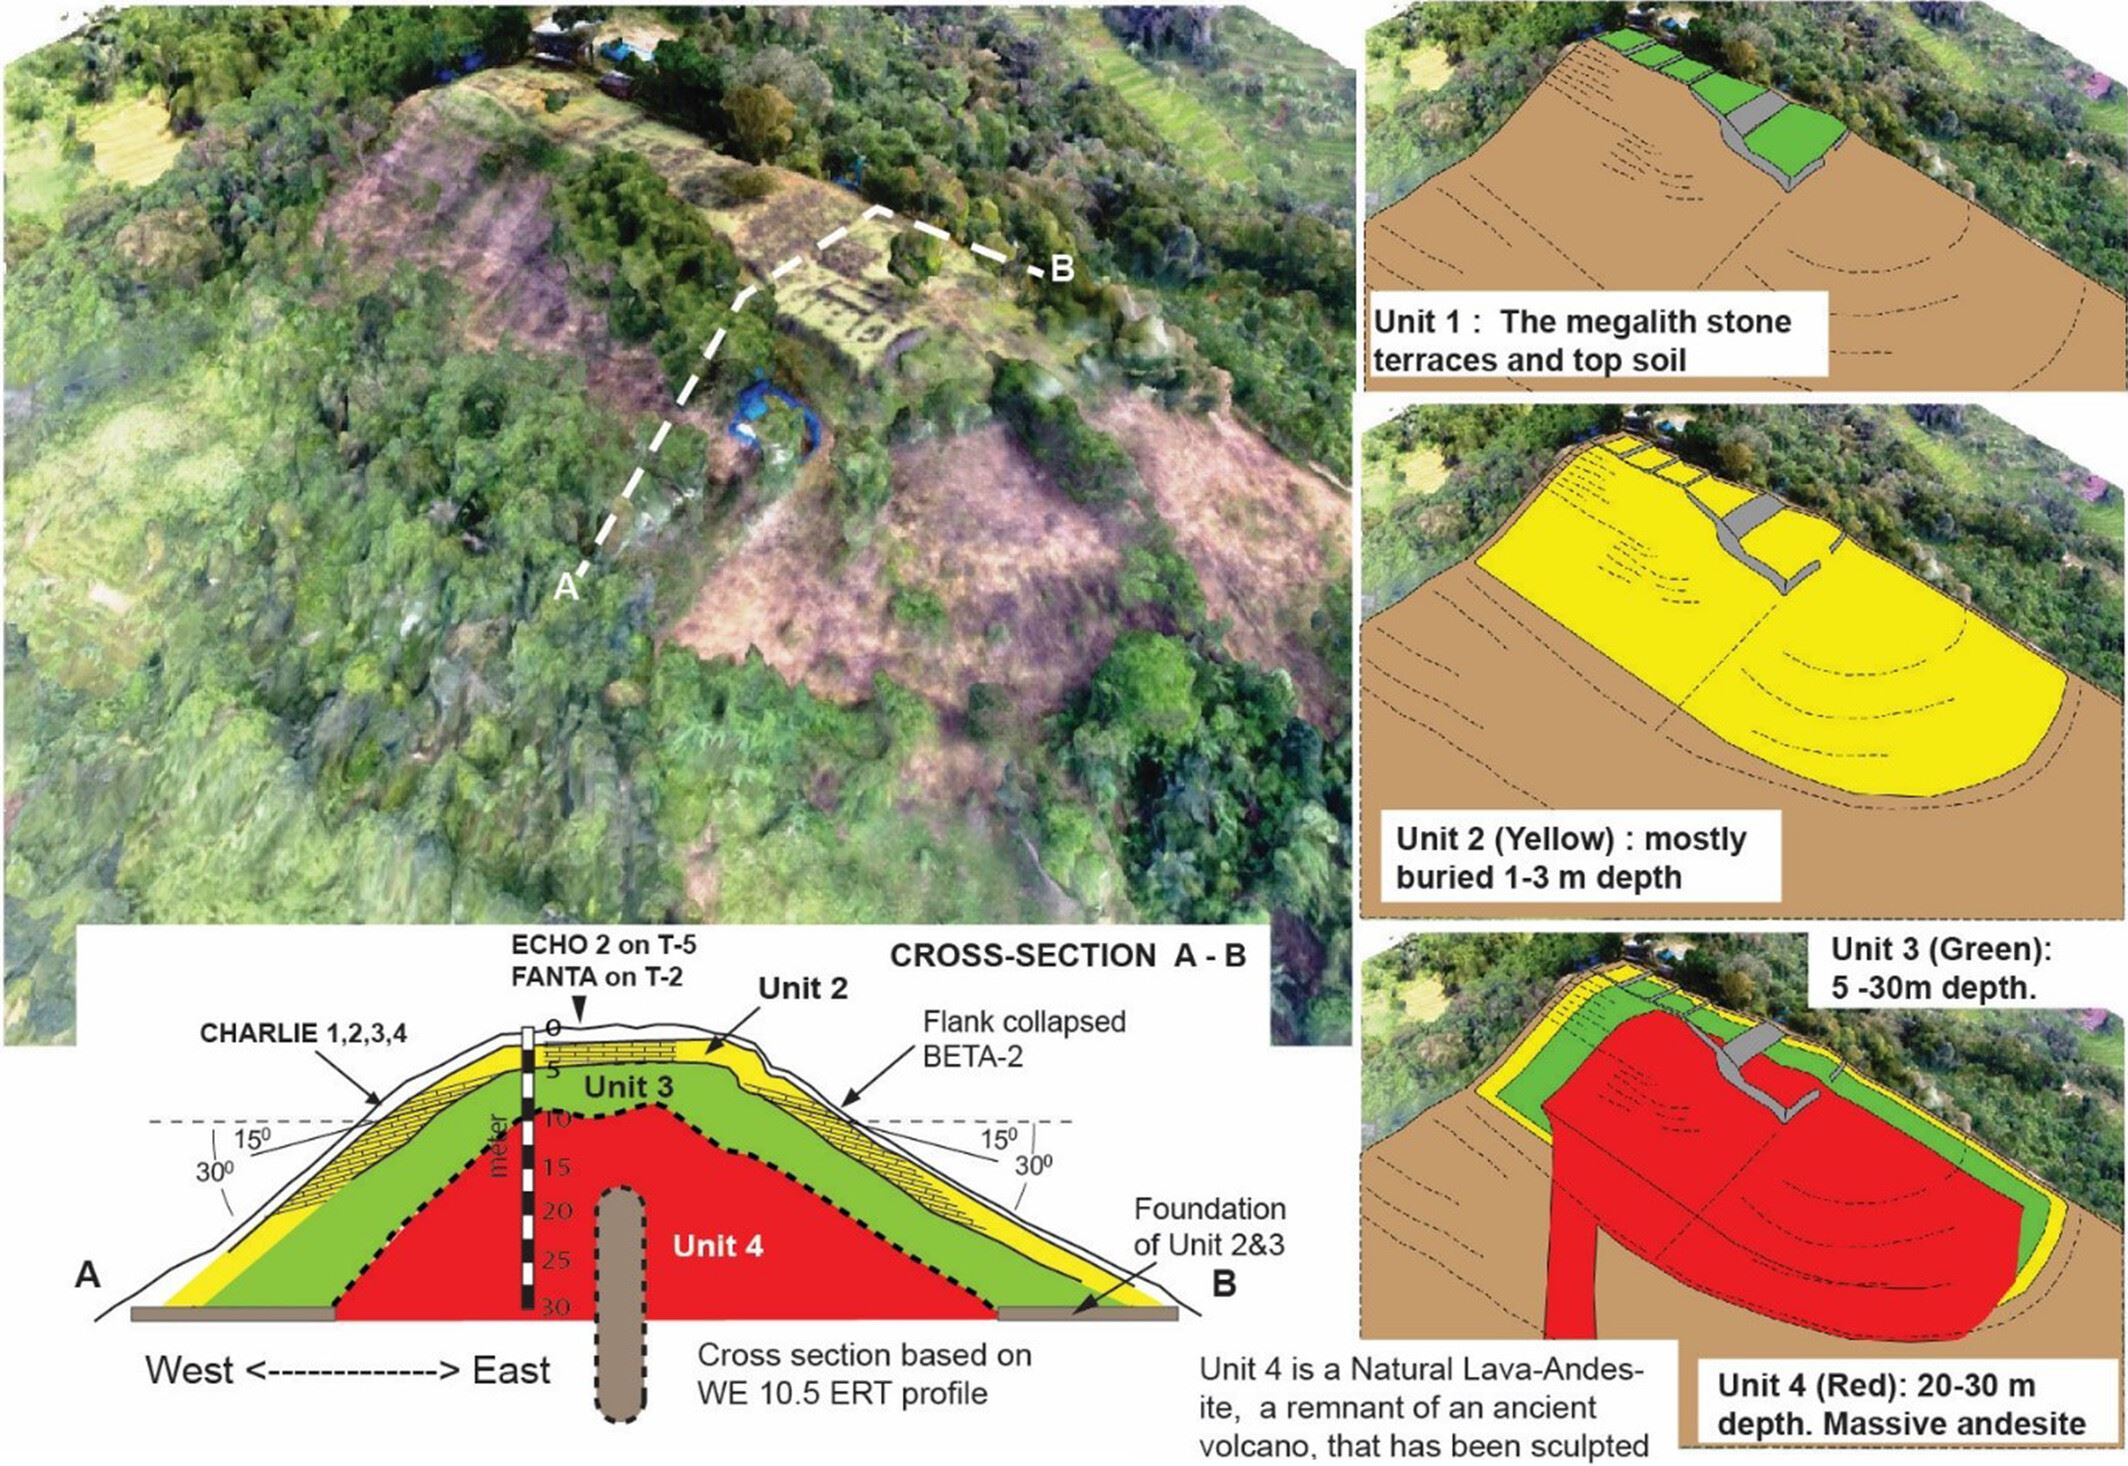 Ricostruzione semplificata di Gunung Padang. L'Unità 1 rappresenta le terrazze superficiali in pietra costruite tra il 2000 e il 1100 a.C. o più recentemente. L'Unità 2 (evidenziata in giallo) corrisponde a uno strato sepolto di forma piramidale composto da rocce colonnari e fu costruito intorno al 6000–5500 a.C. L'unità 3 (mostrata in verde) risale al 25.000–14.000 a.C. L'Unità 4 rappresenta la massiccia lava basaltica-andesite scolpita